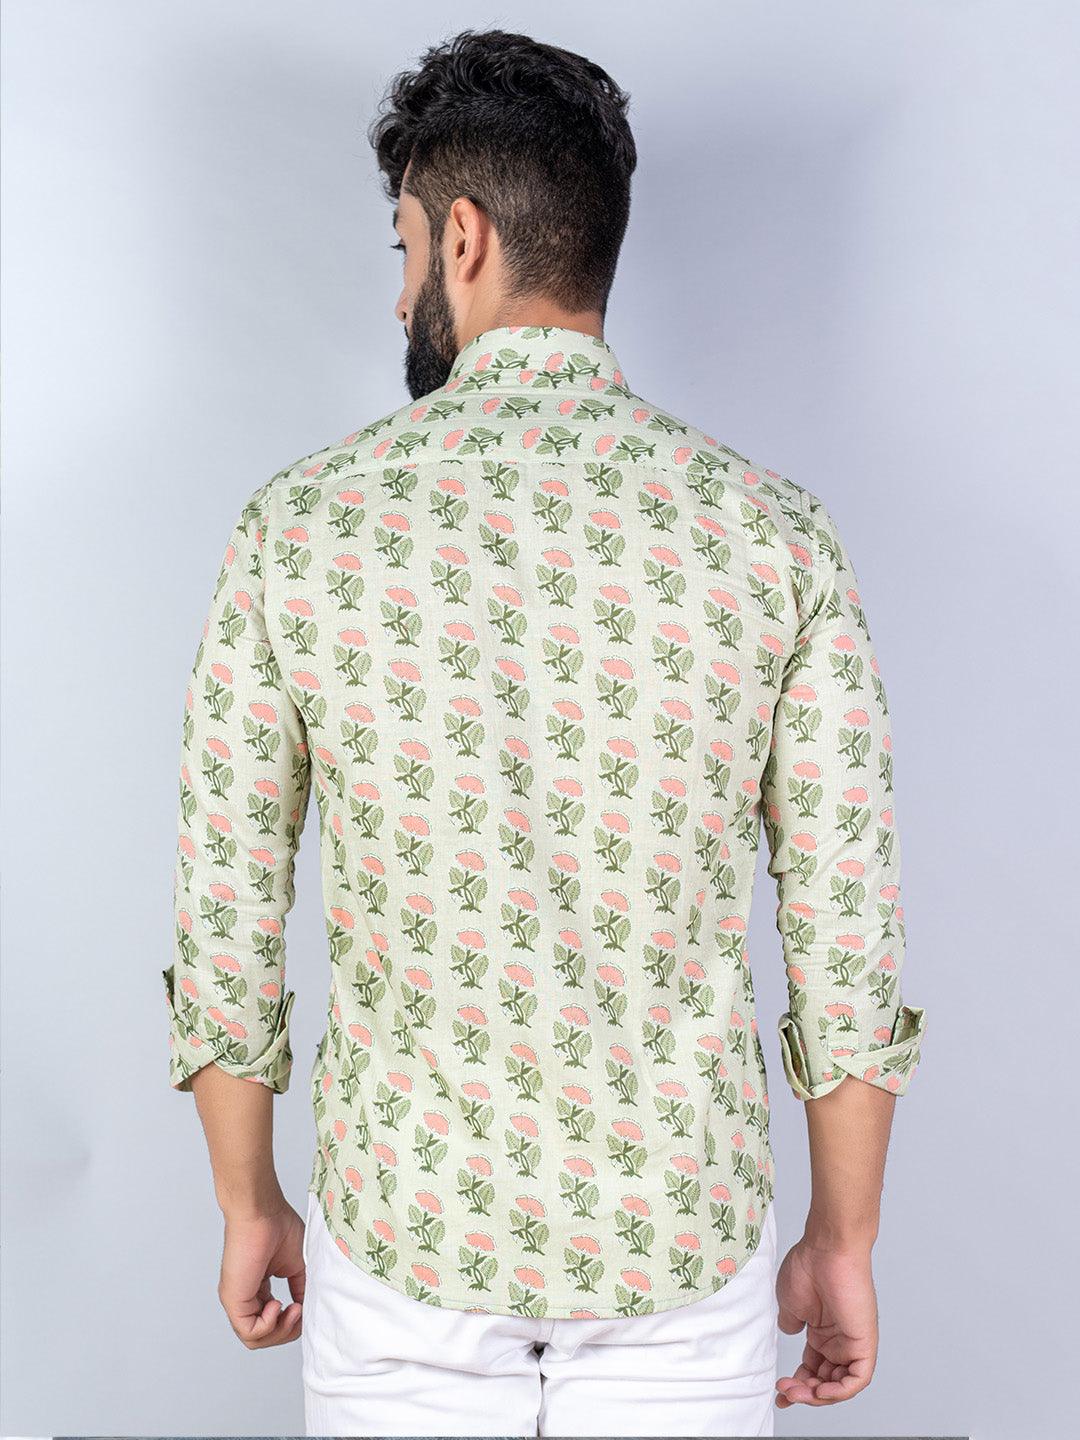 floral printed shirts